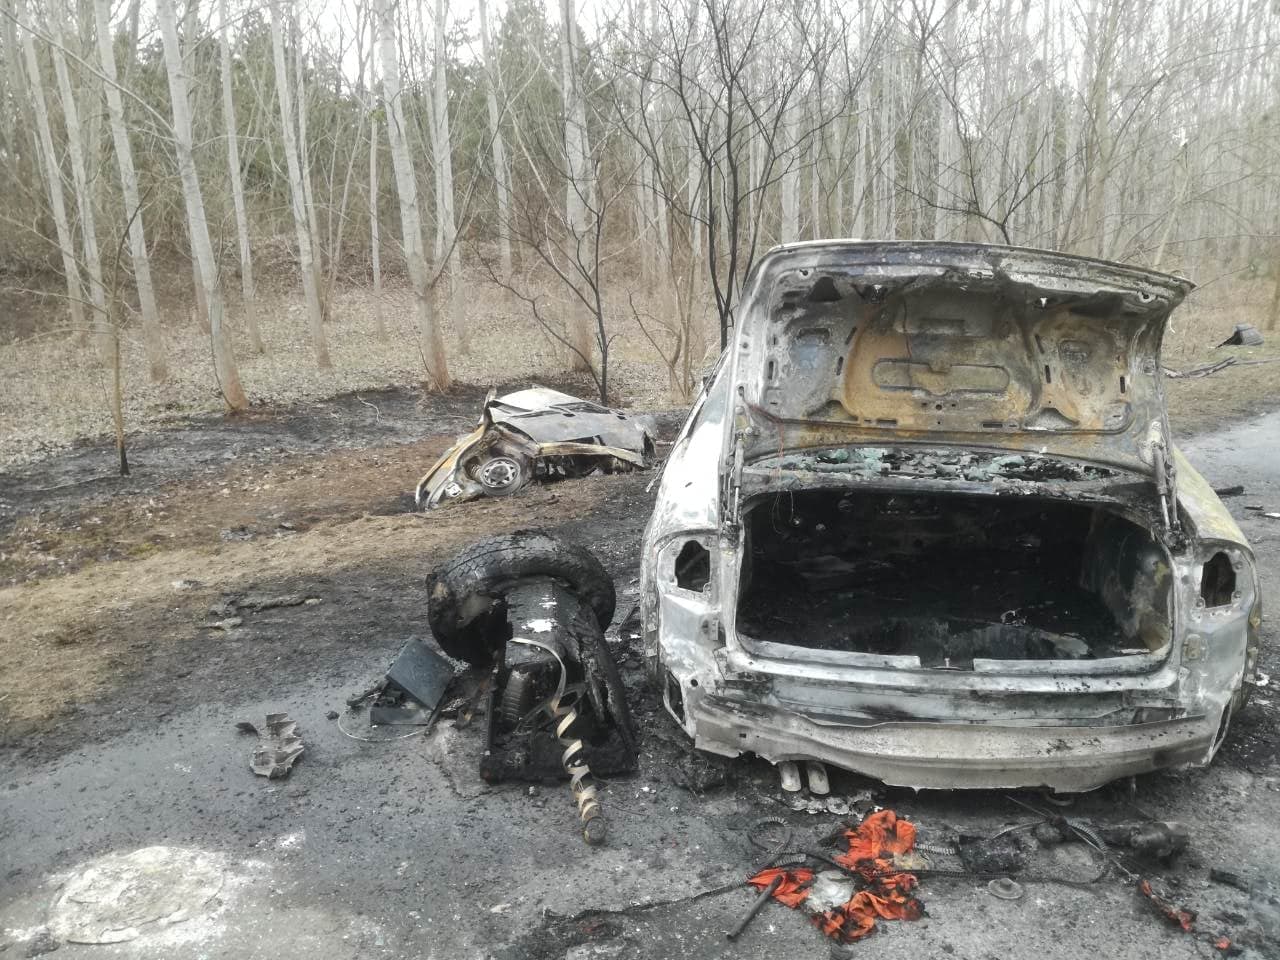 Szemtanú a mezőörsi karambolról: tehetetlenül nézték, amint a tűz felemészti a két kocsit